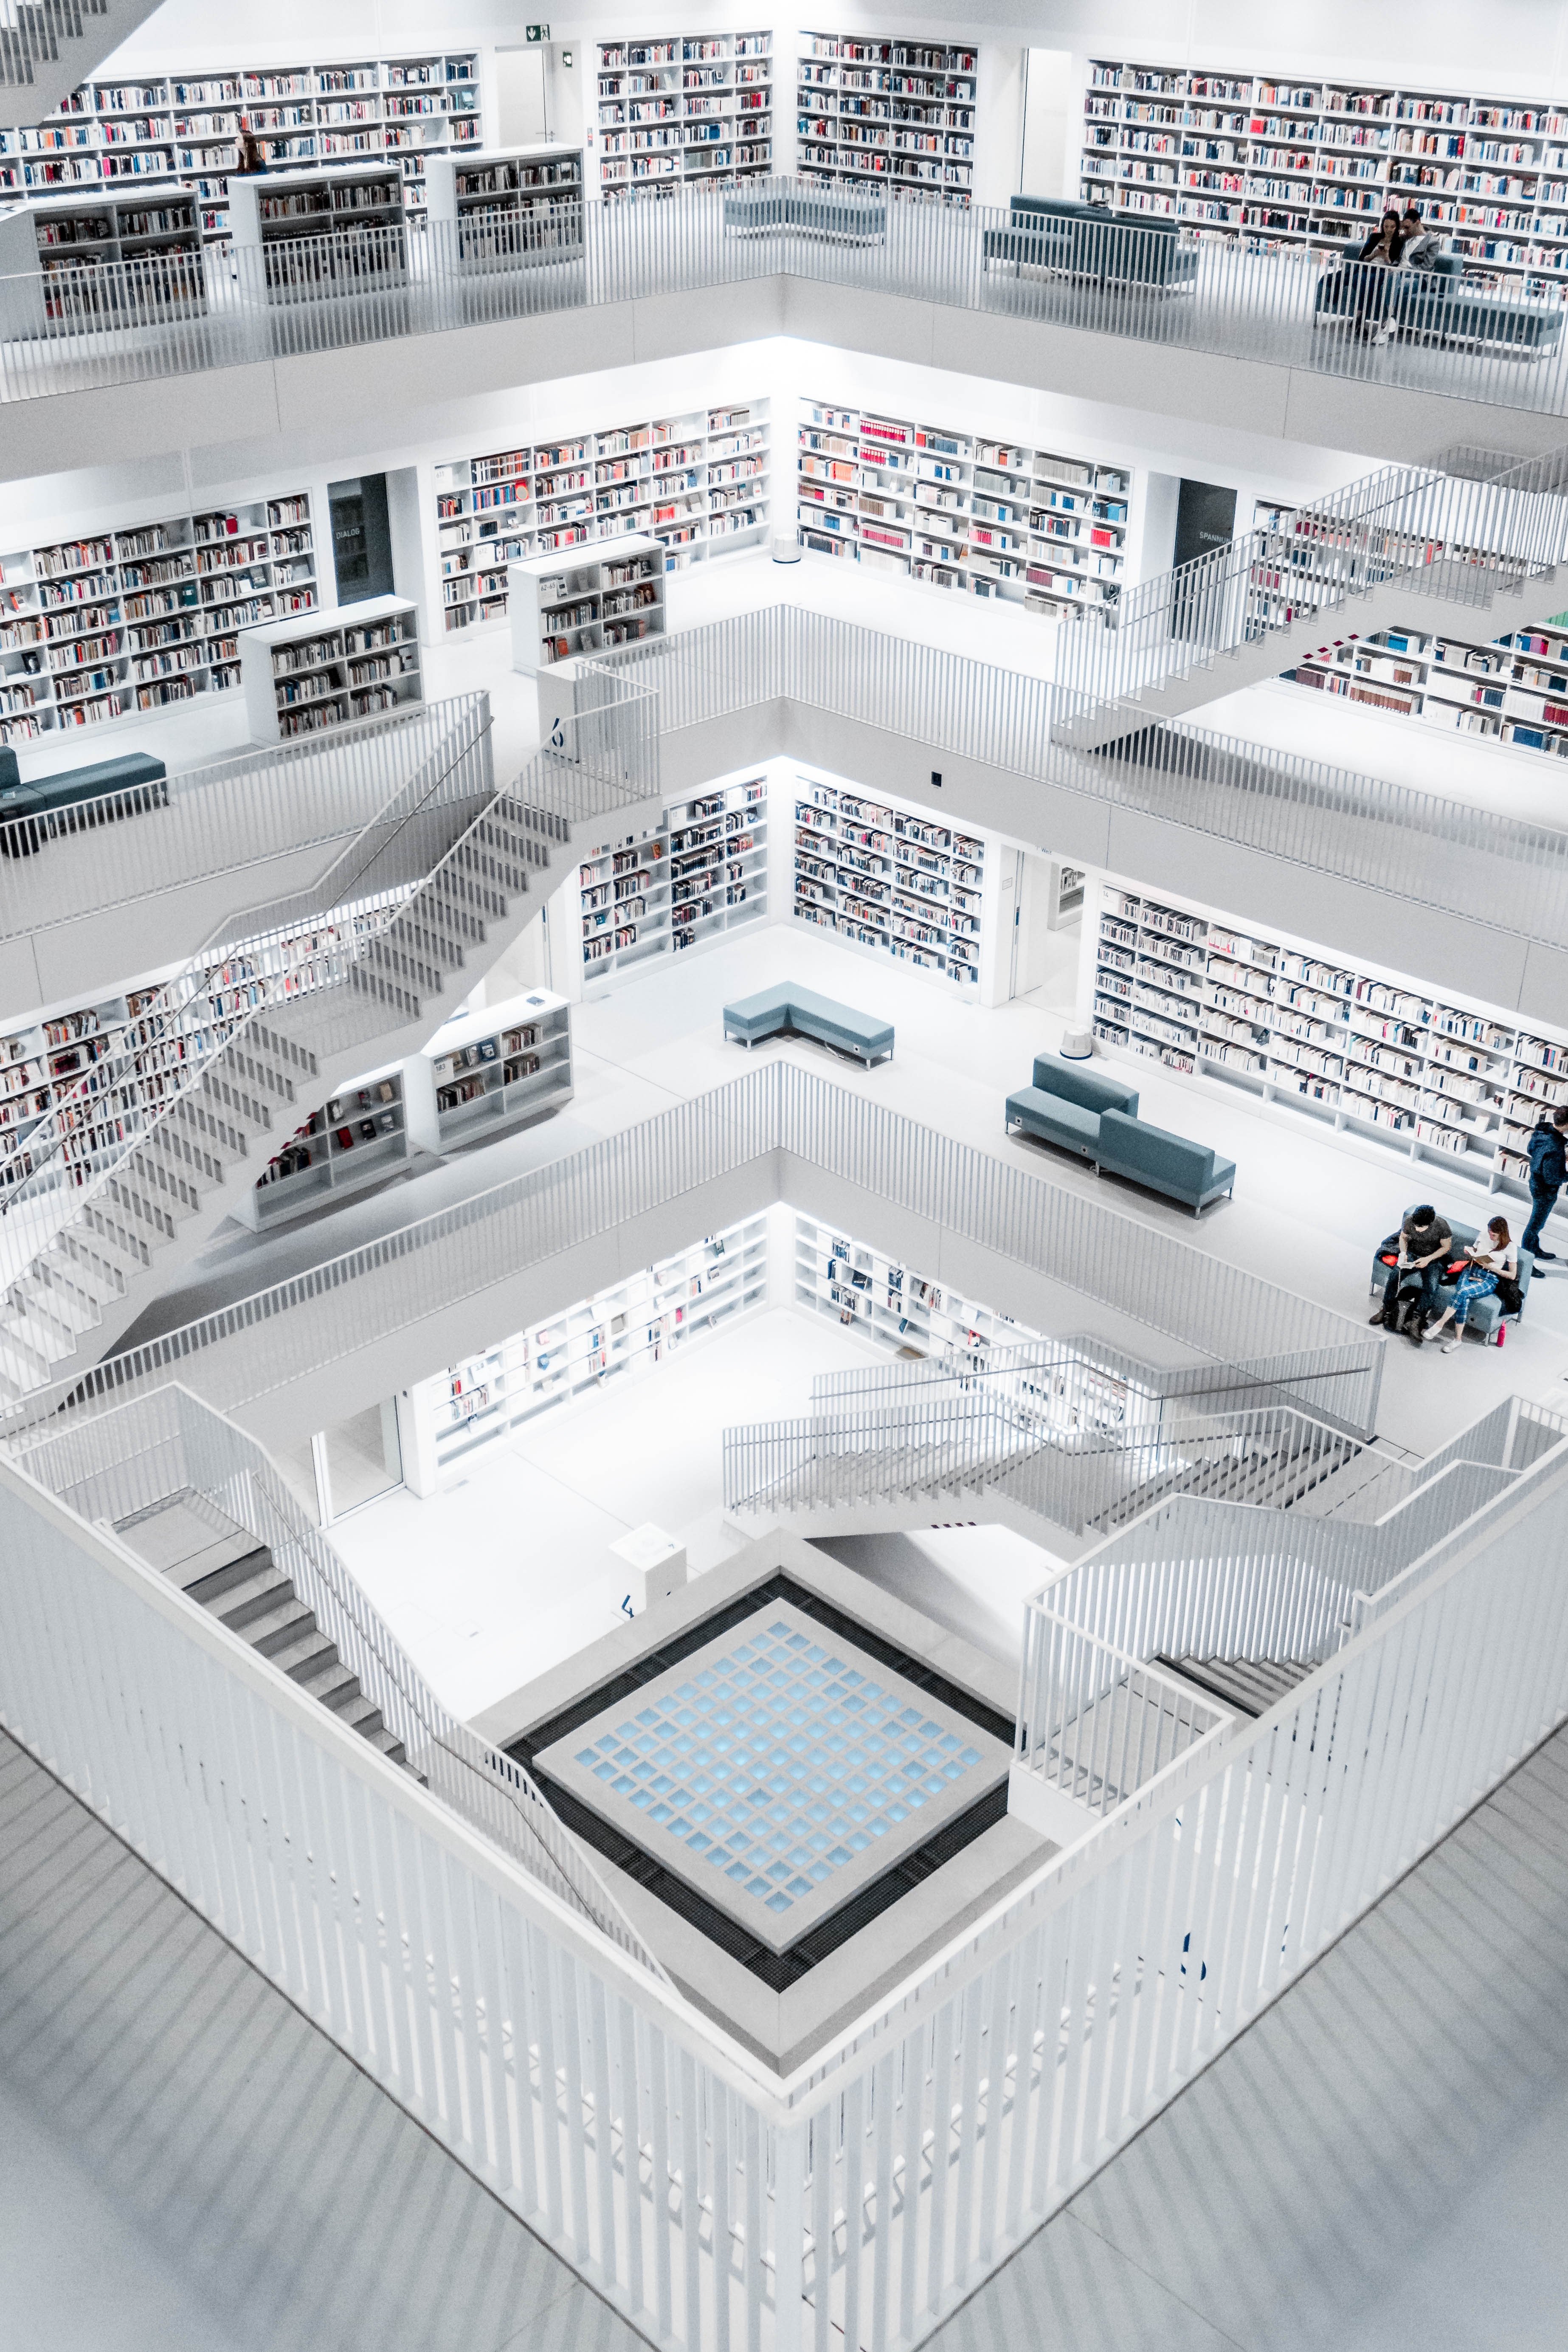 books, library, interior, architecture, miscellanea, miscellaneous